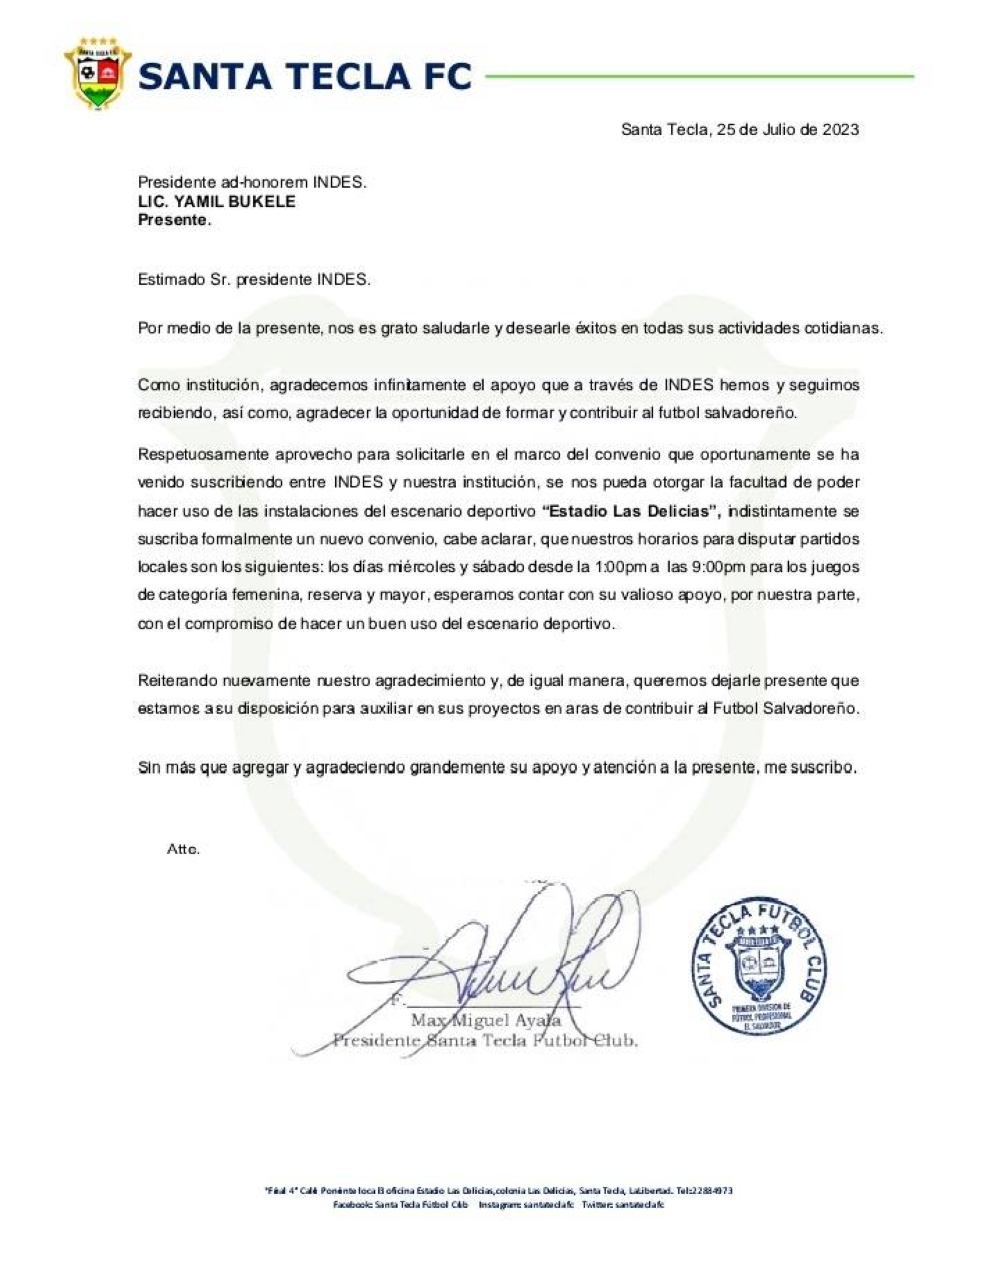 Santa Tecla requests INDES to use Las Delicias Stadium.